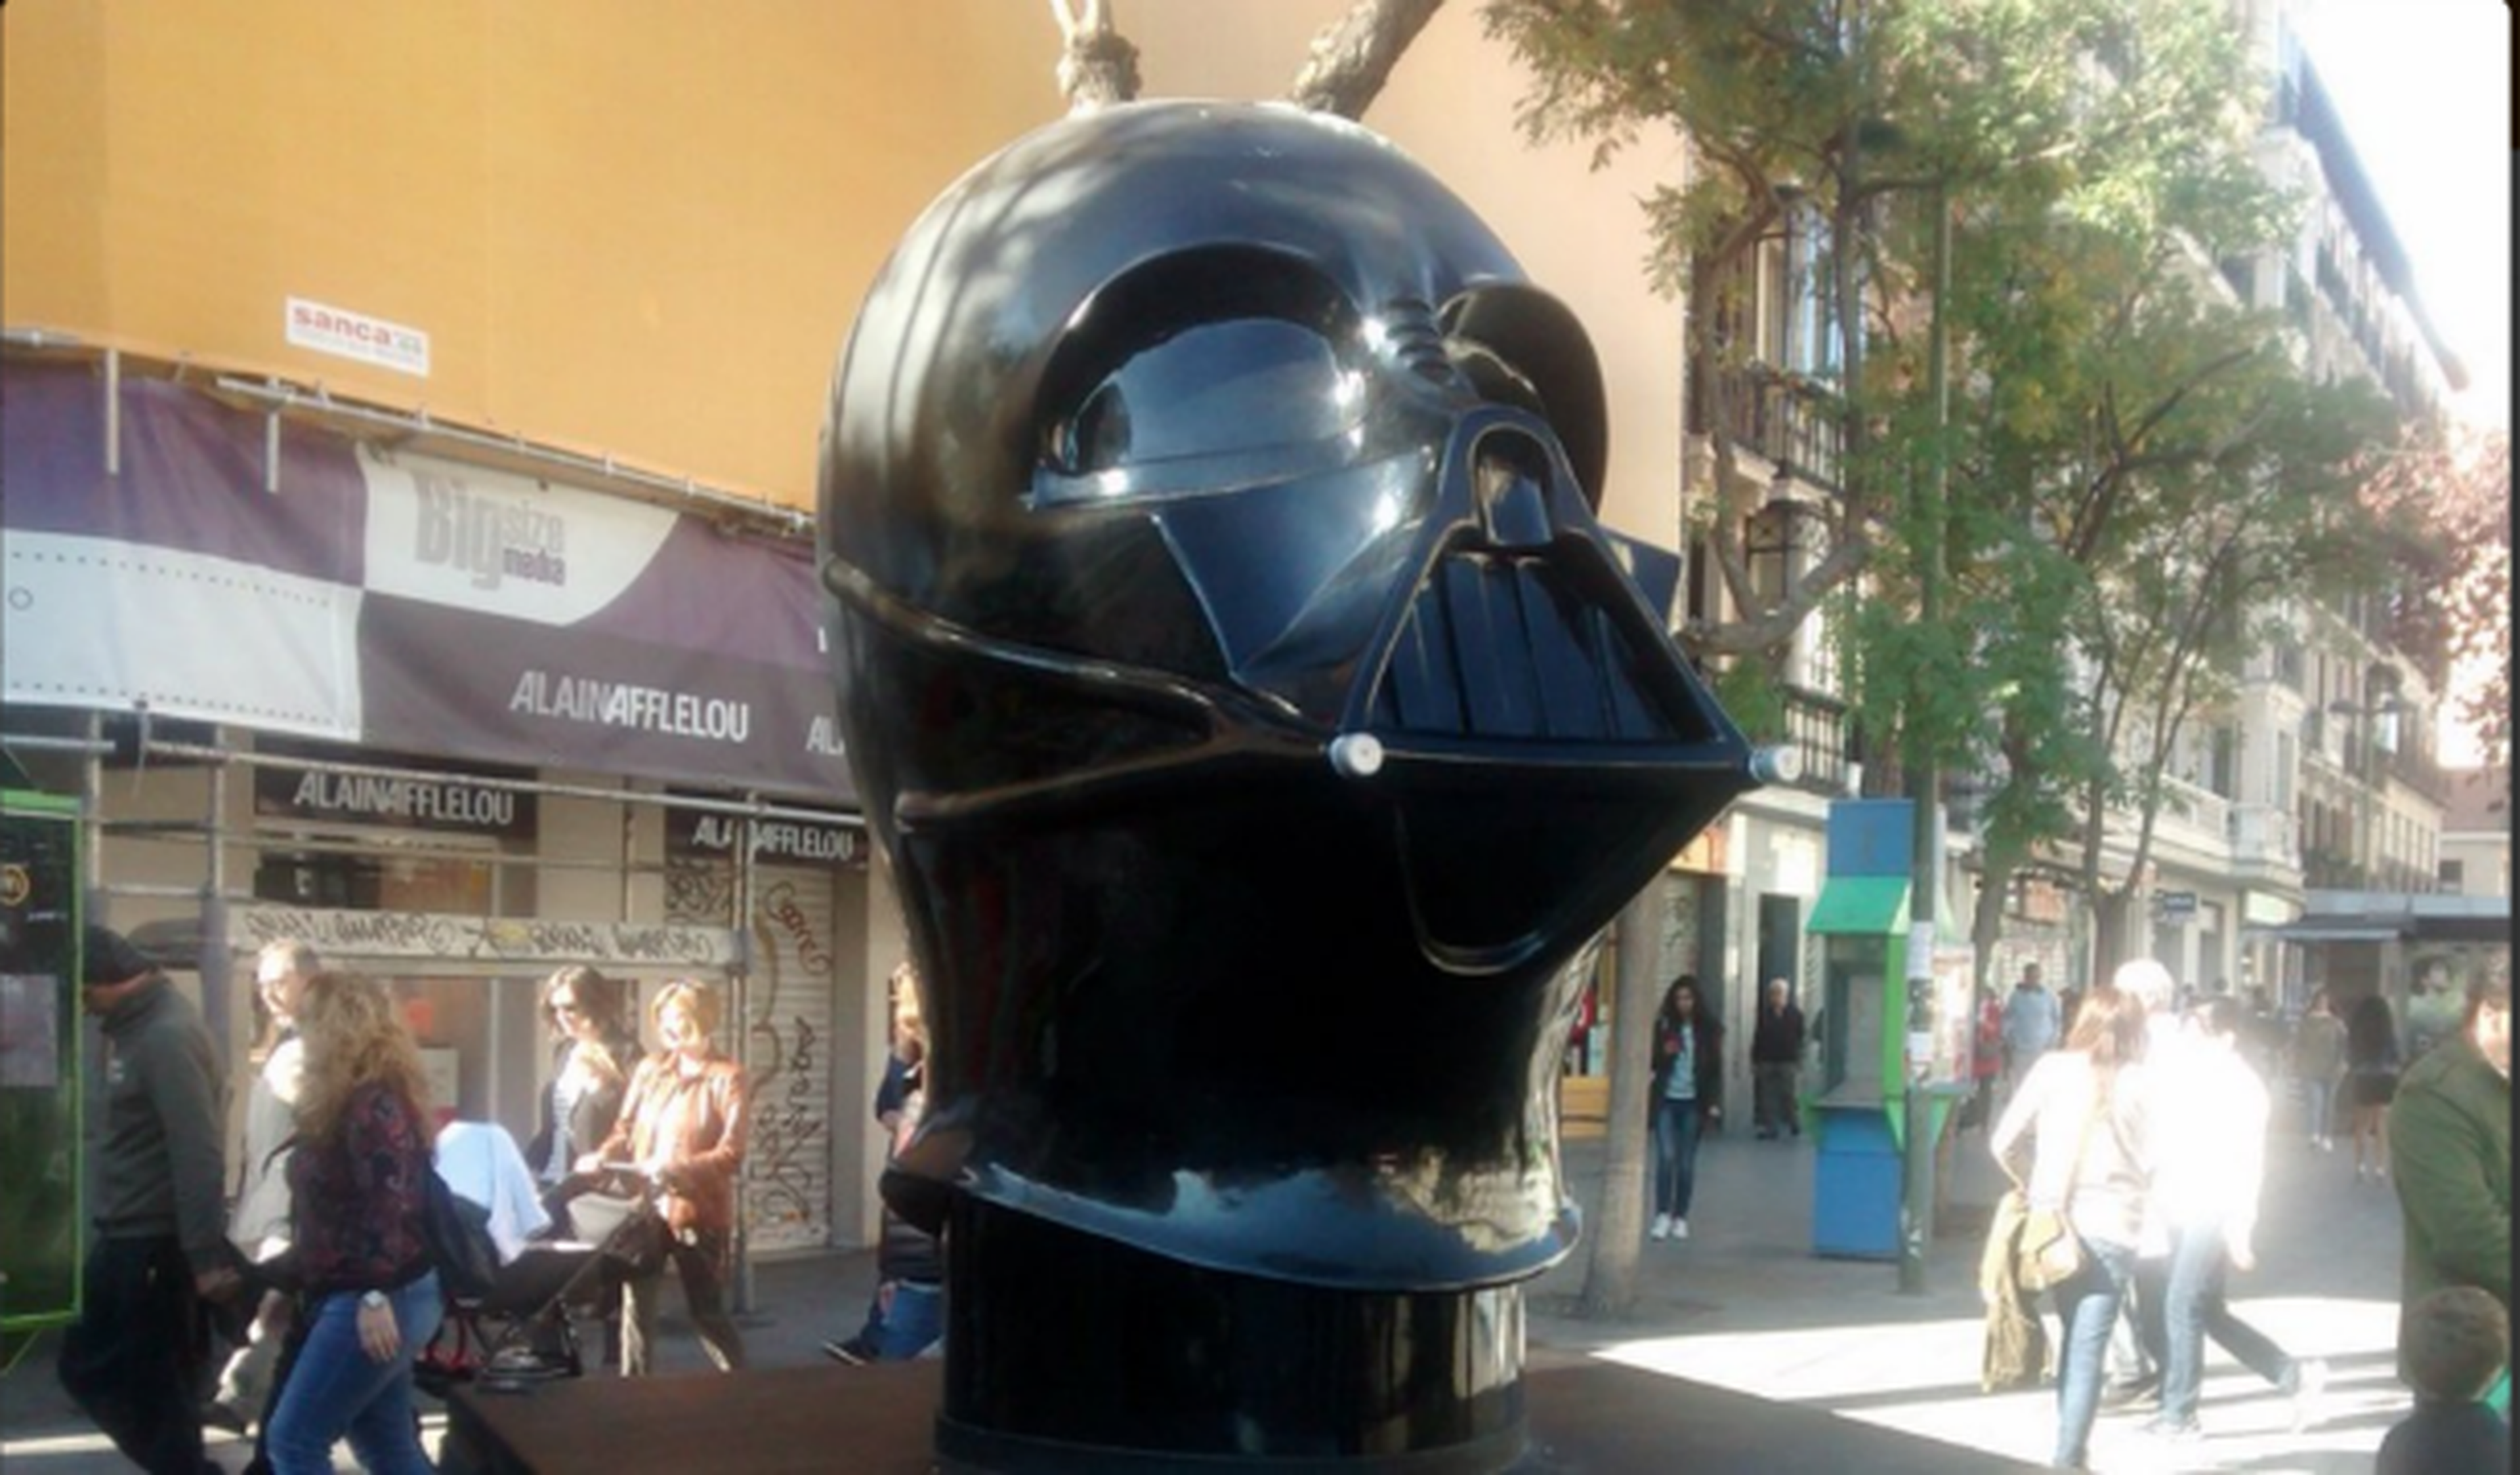 El casco de Darth Vader de la Exposición Star Wars: Face the Force está siendo reparado